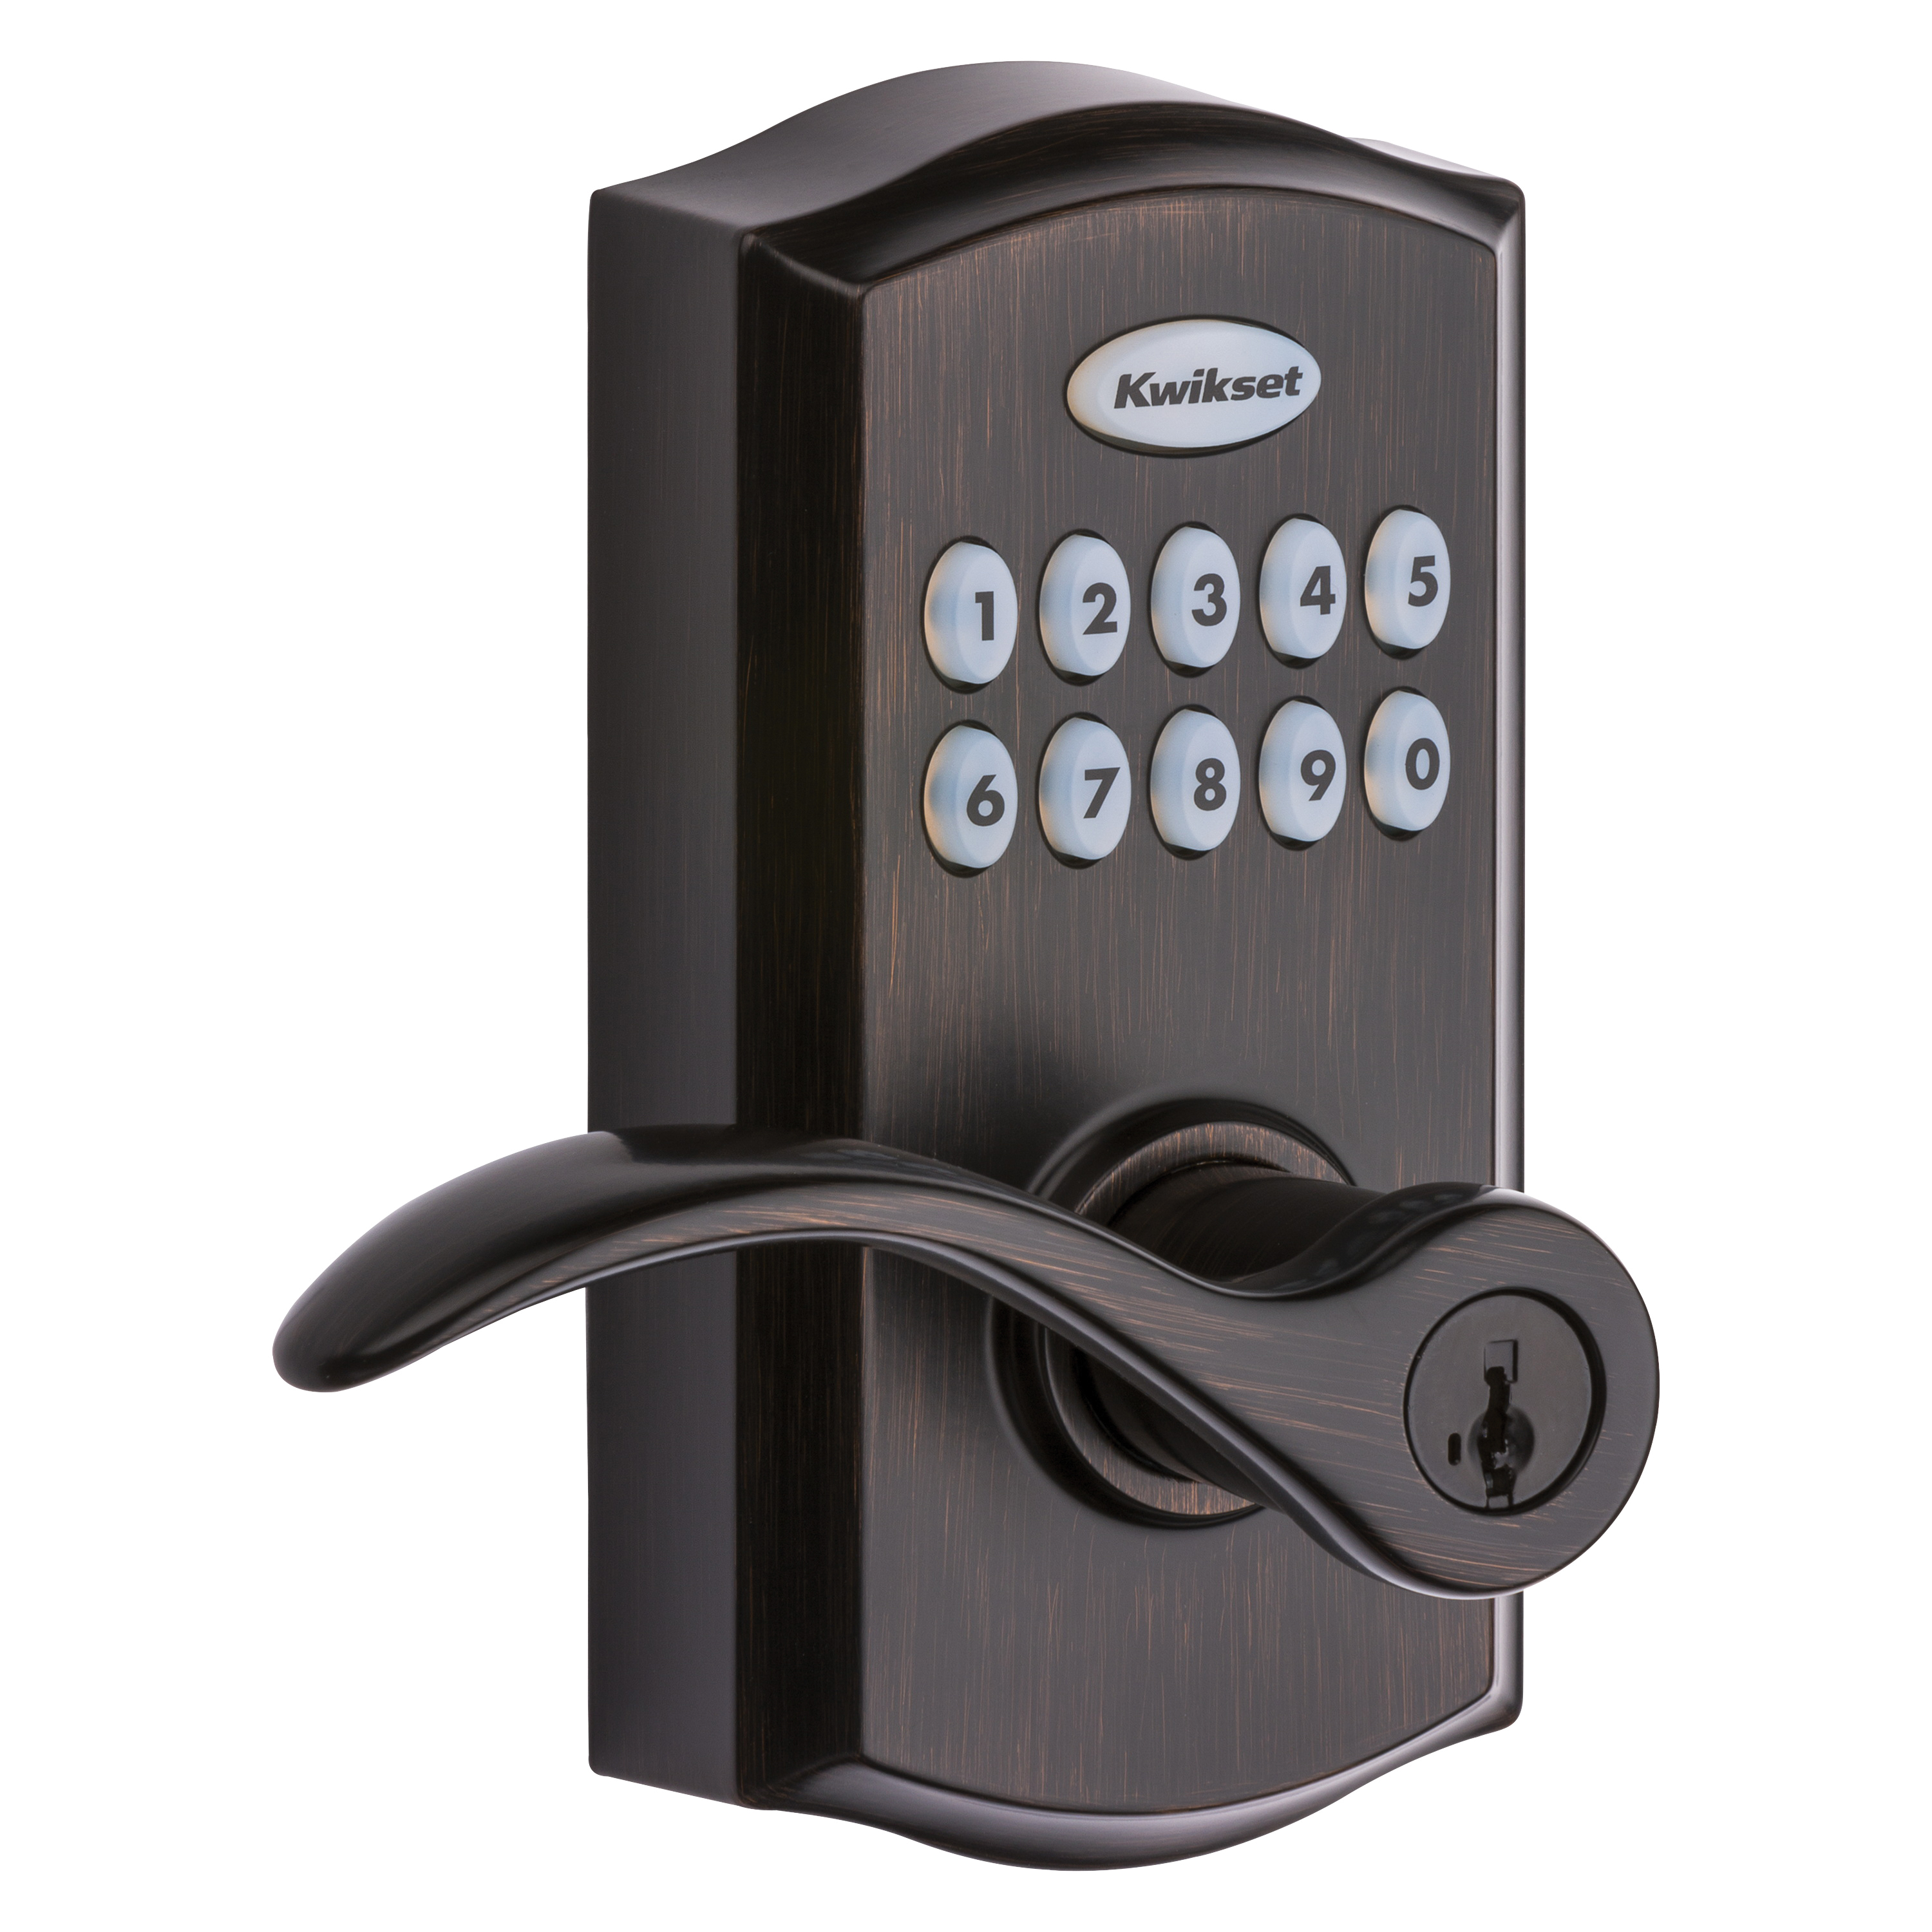 Kwikset 955PML 11P SMT CP Electronic Entry Lock, Venetian Bronze, Commercial, AAA Grade, Zinc, Keypad Included